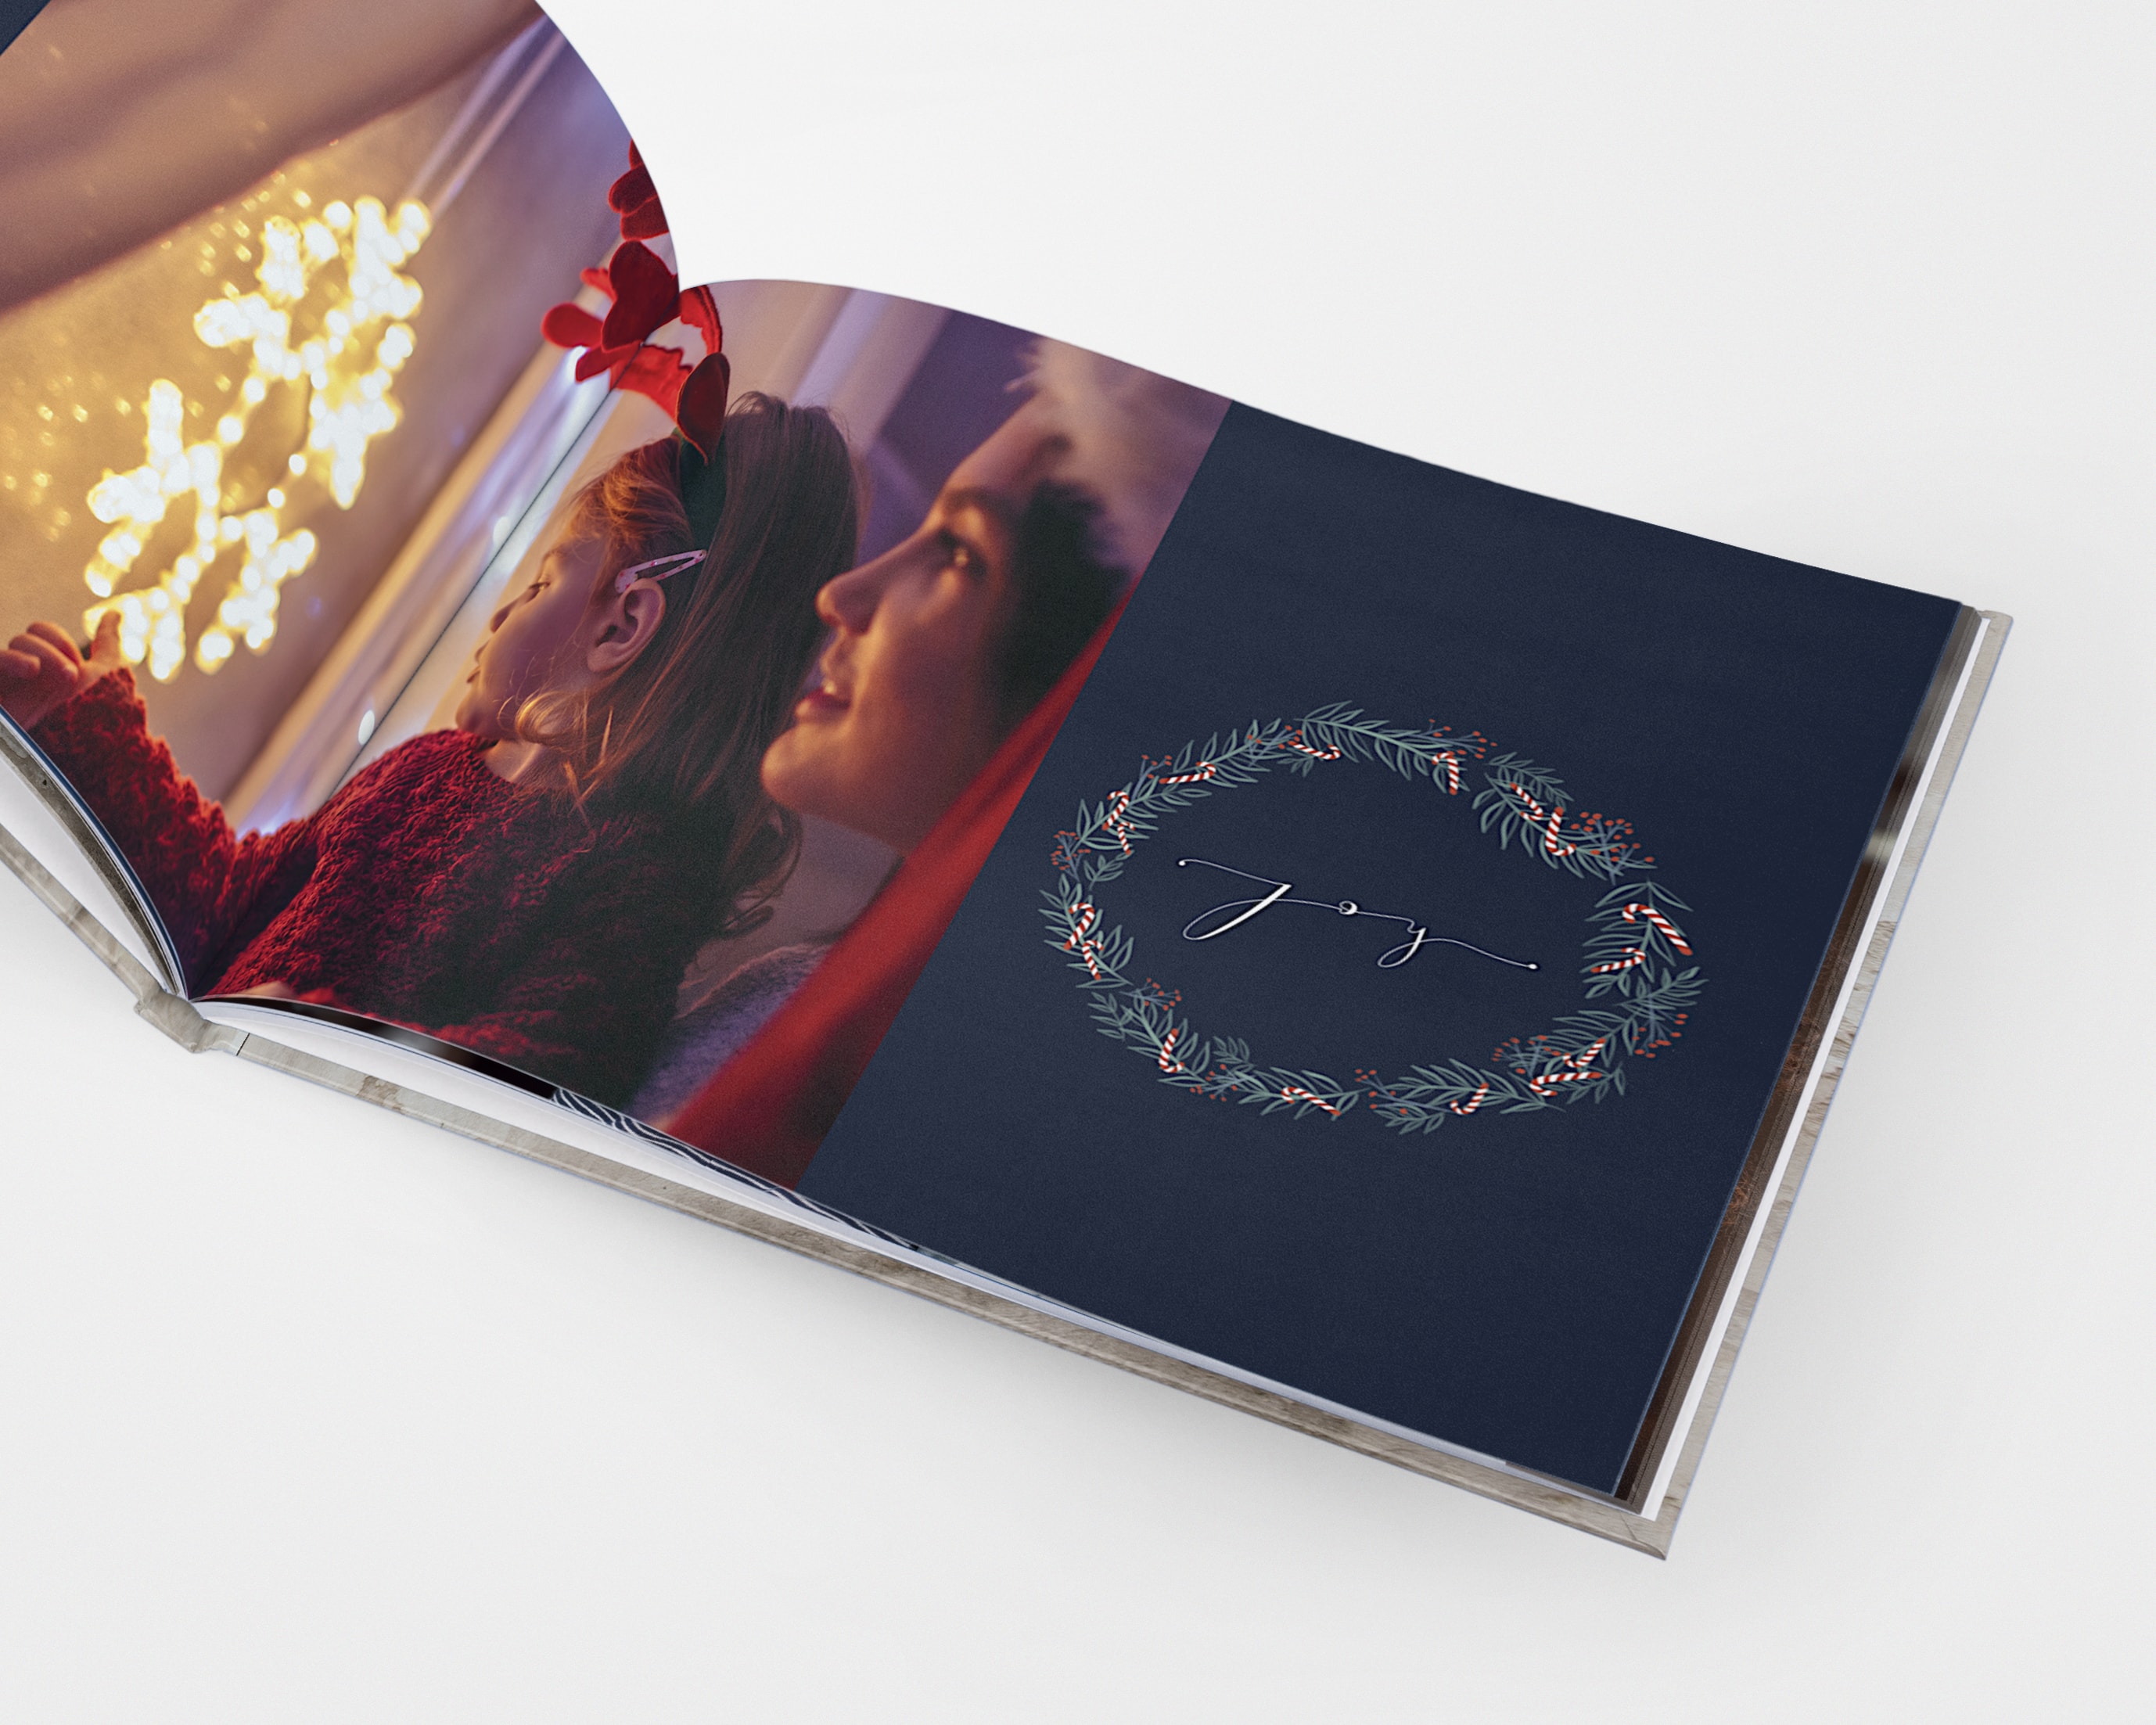 Ein weihnachtliches Fotobuch mit festlichen Zeichnungen und einem Bild einer Mutter und einer Tochter, die die Weihnachtsbeleuchtung bestaunen